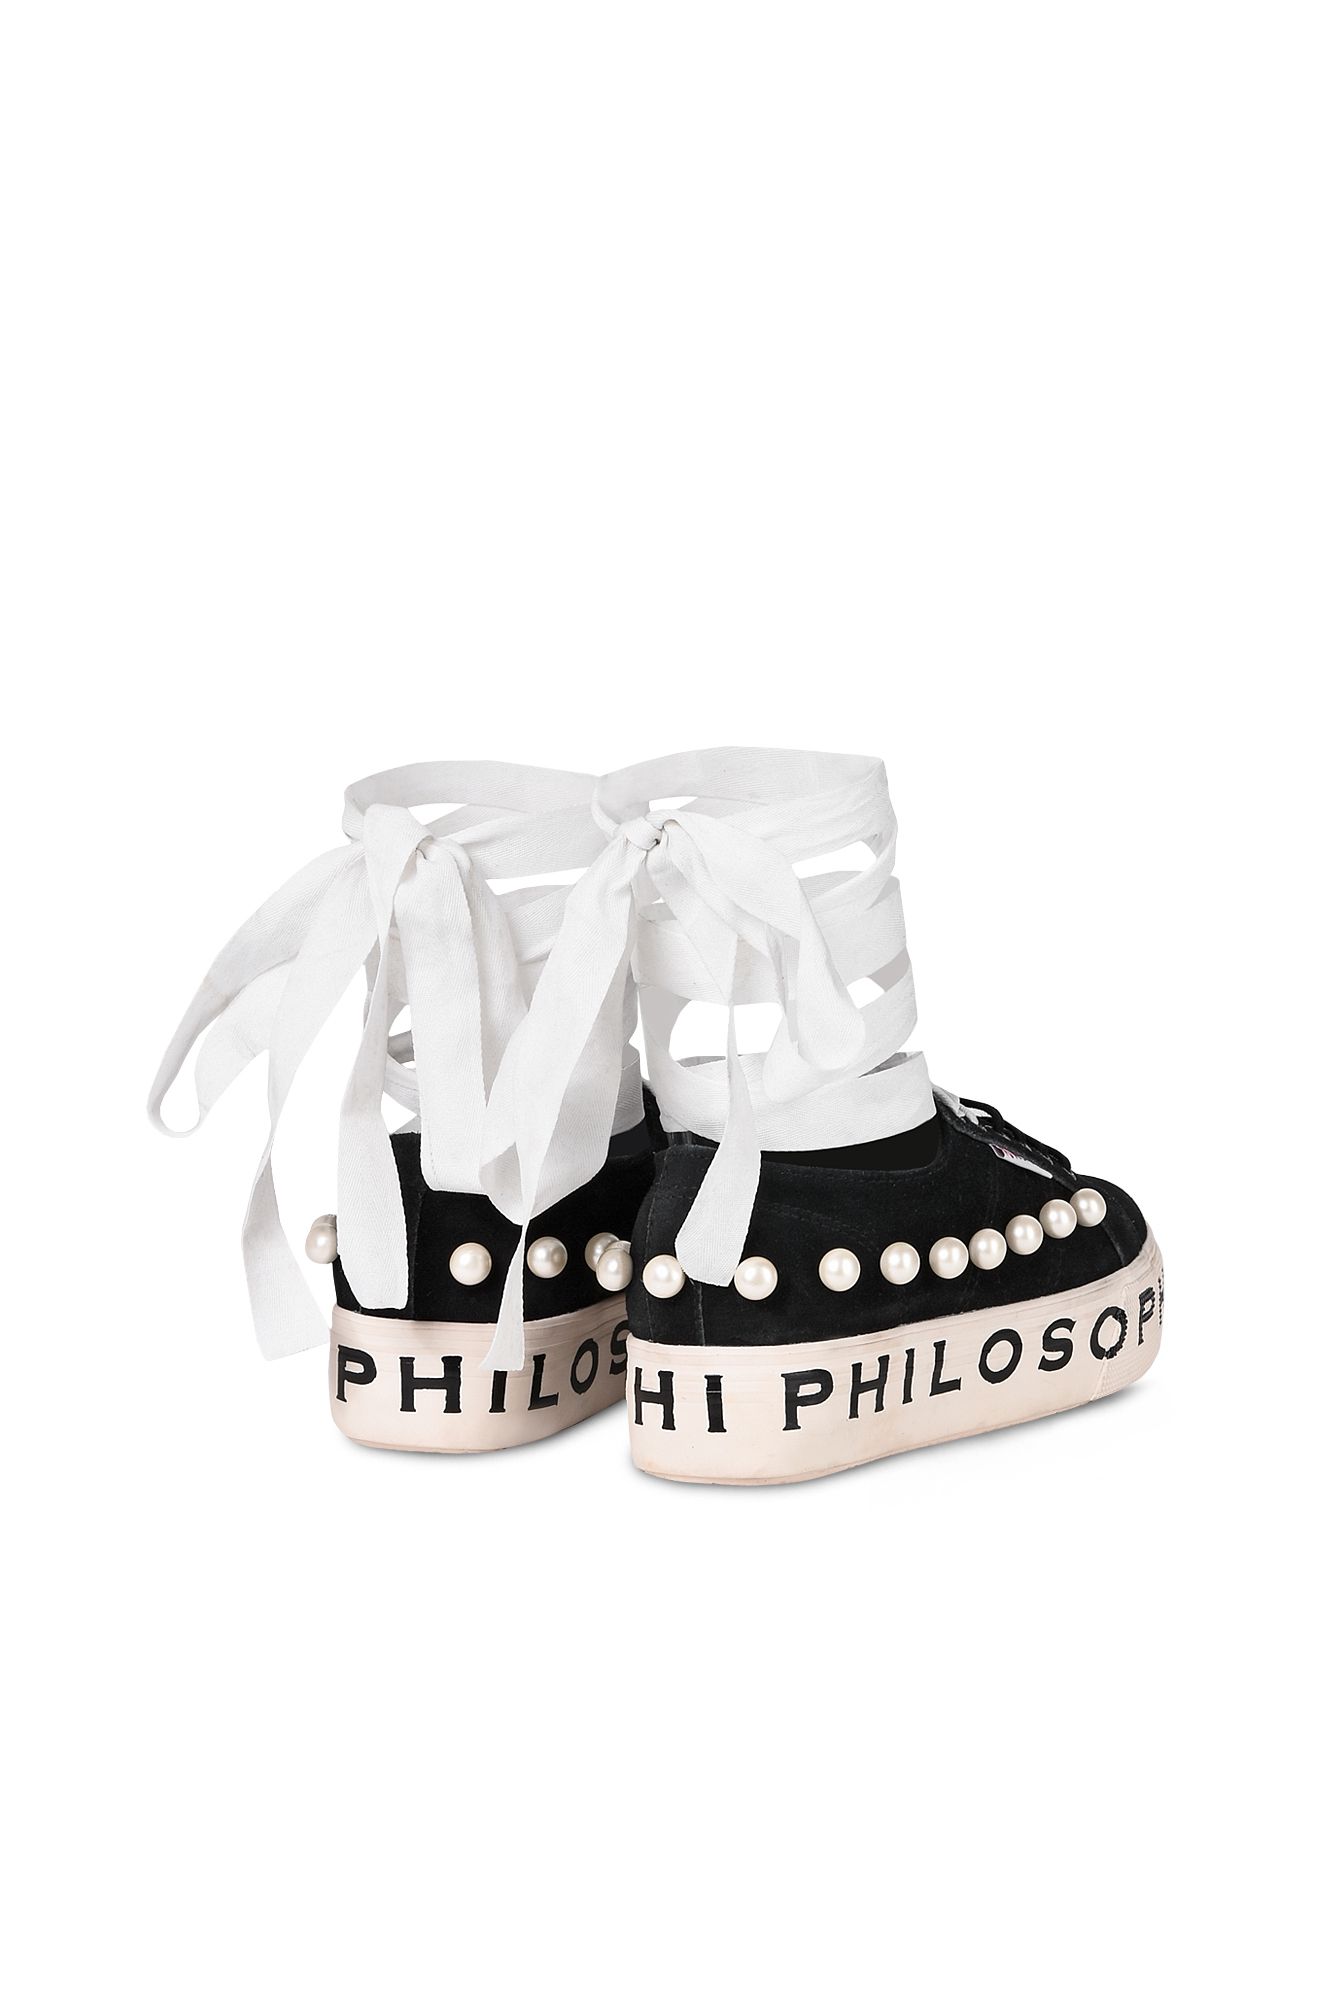 philosophy scarpe superga